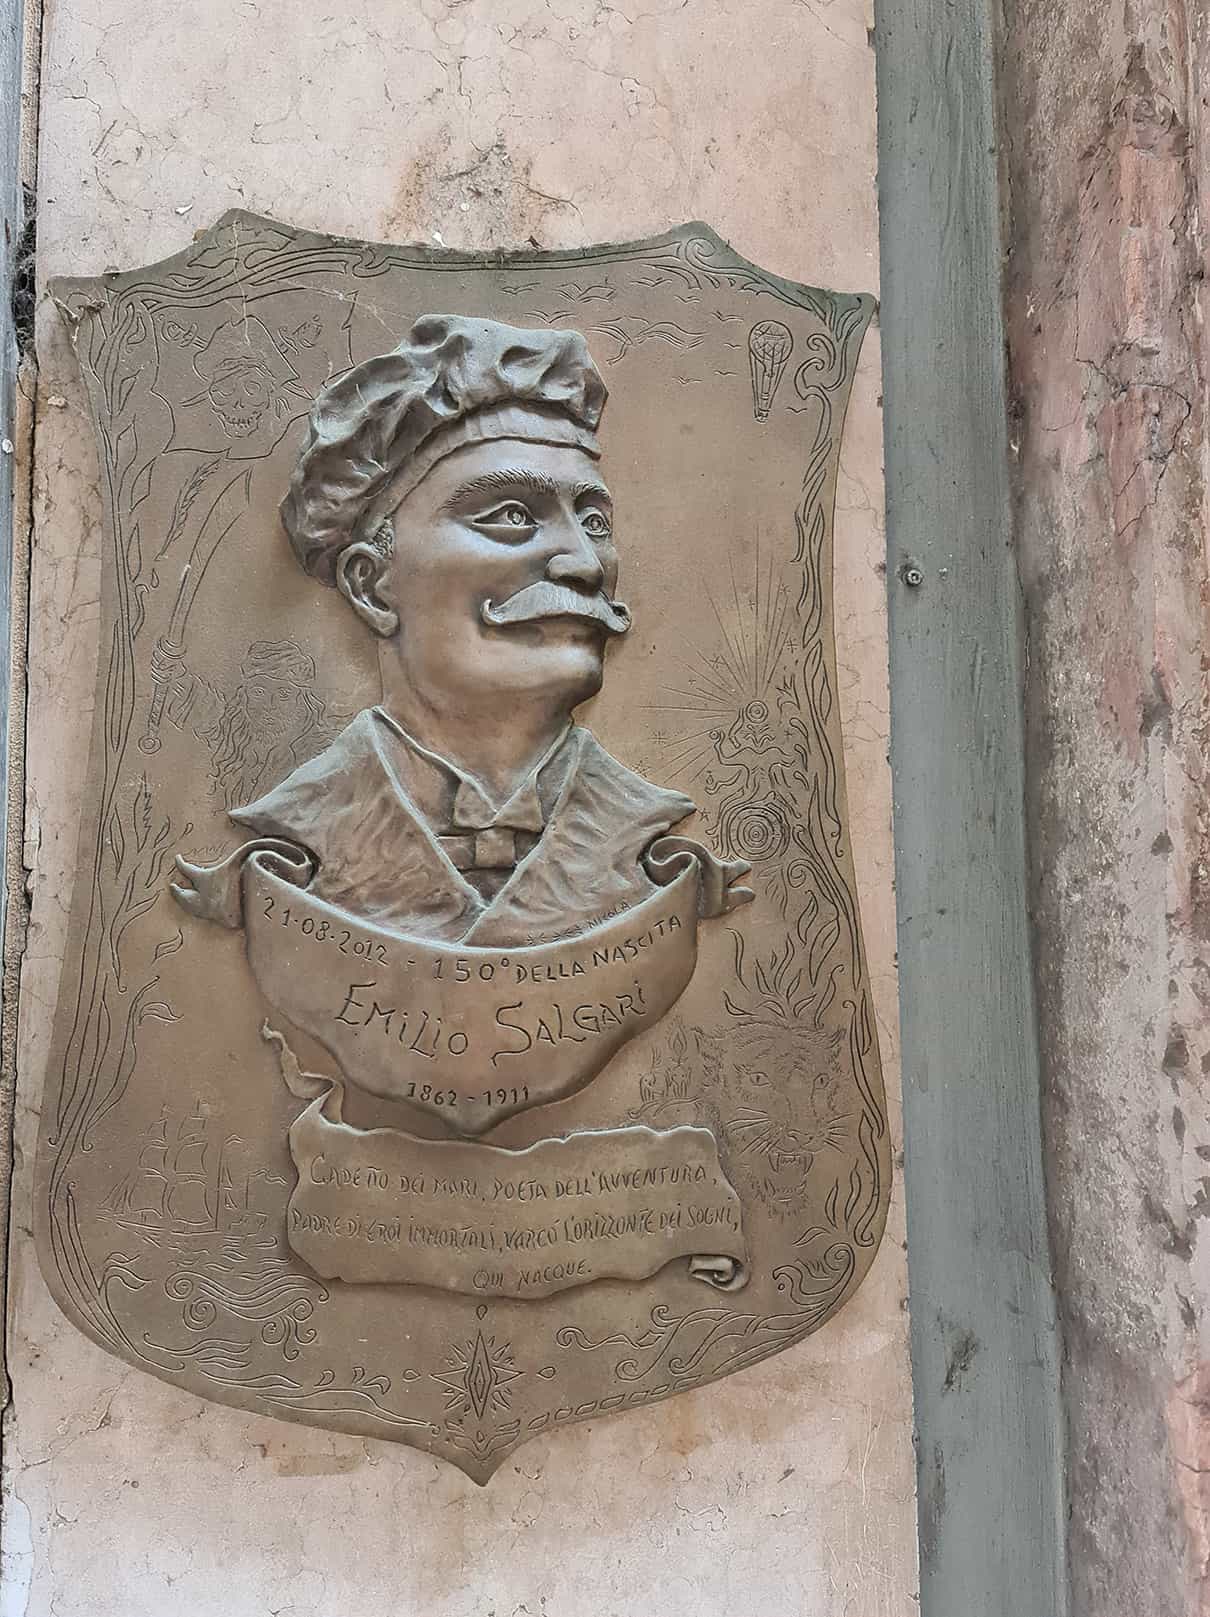 in foto si vede un bassorilievo in bronzo che raffigura la faccia baffuta di Emilio Salgari, che nacque su corso Borsari al civico 7